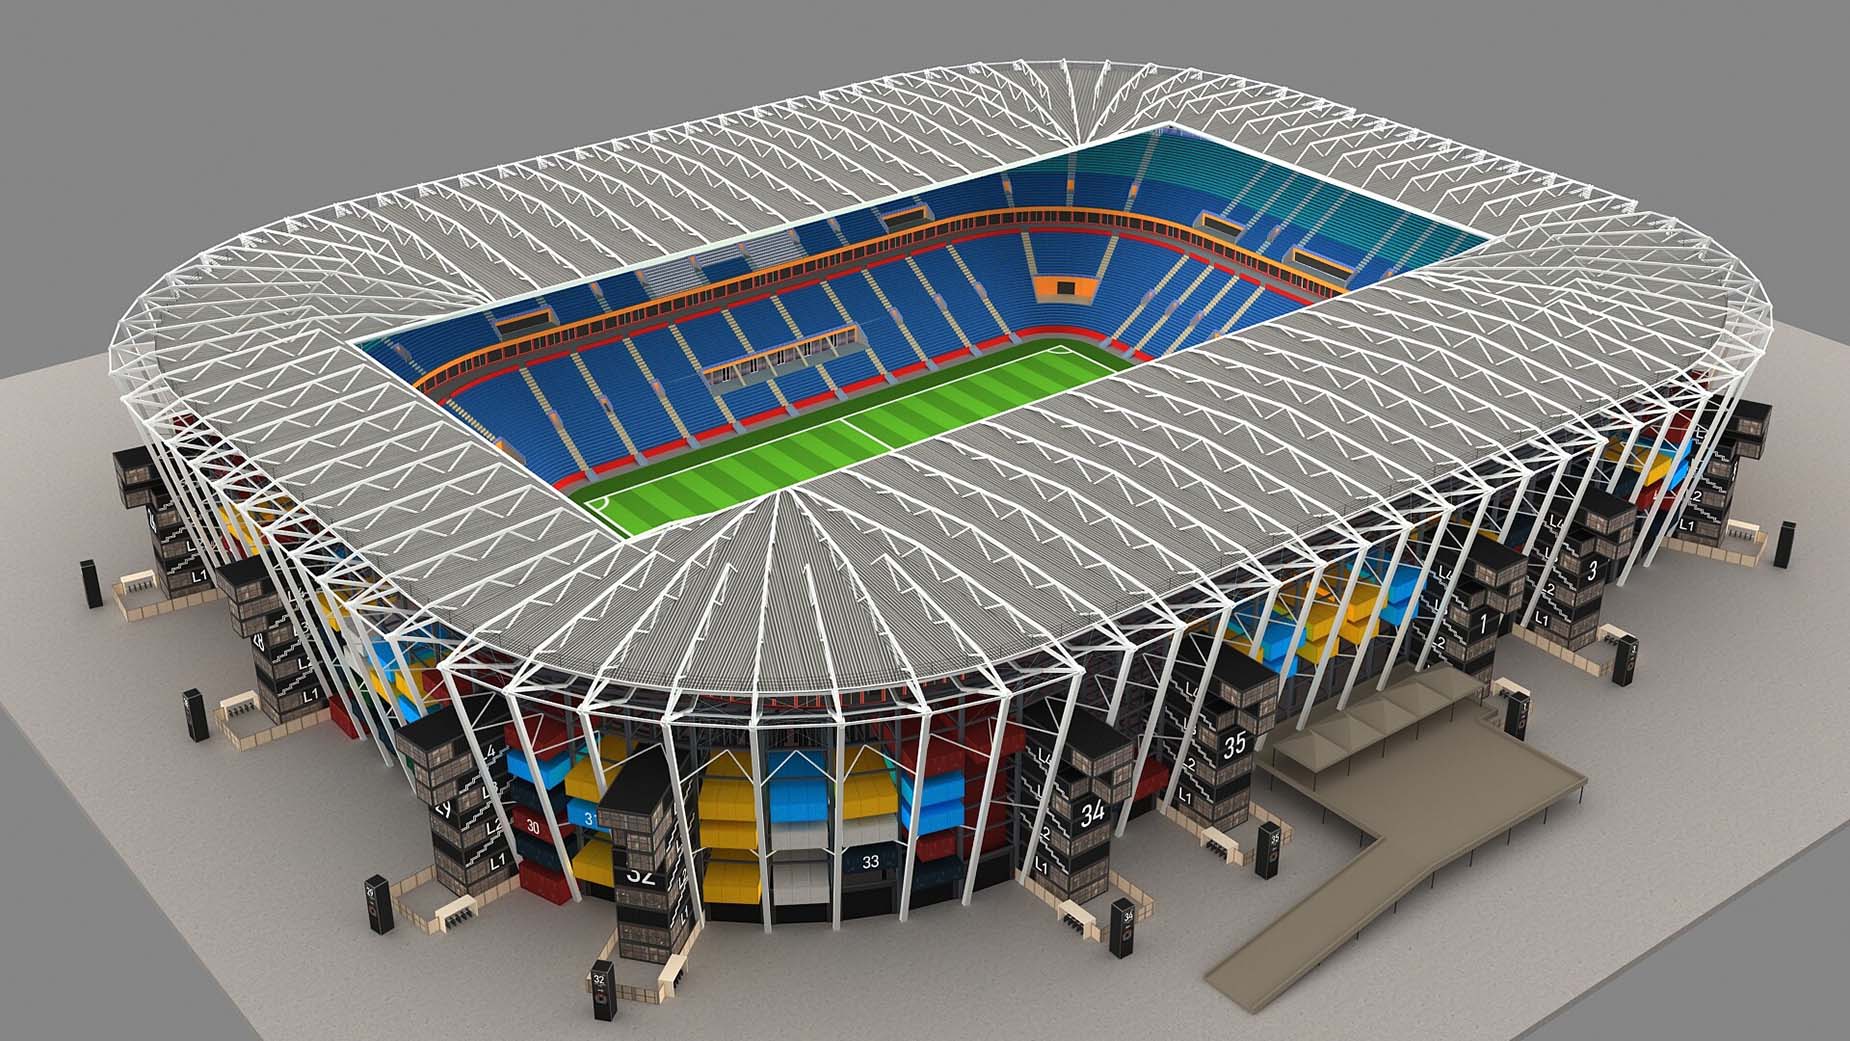 stadium 974 design concept 3d render